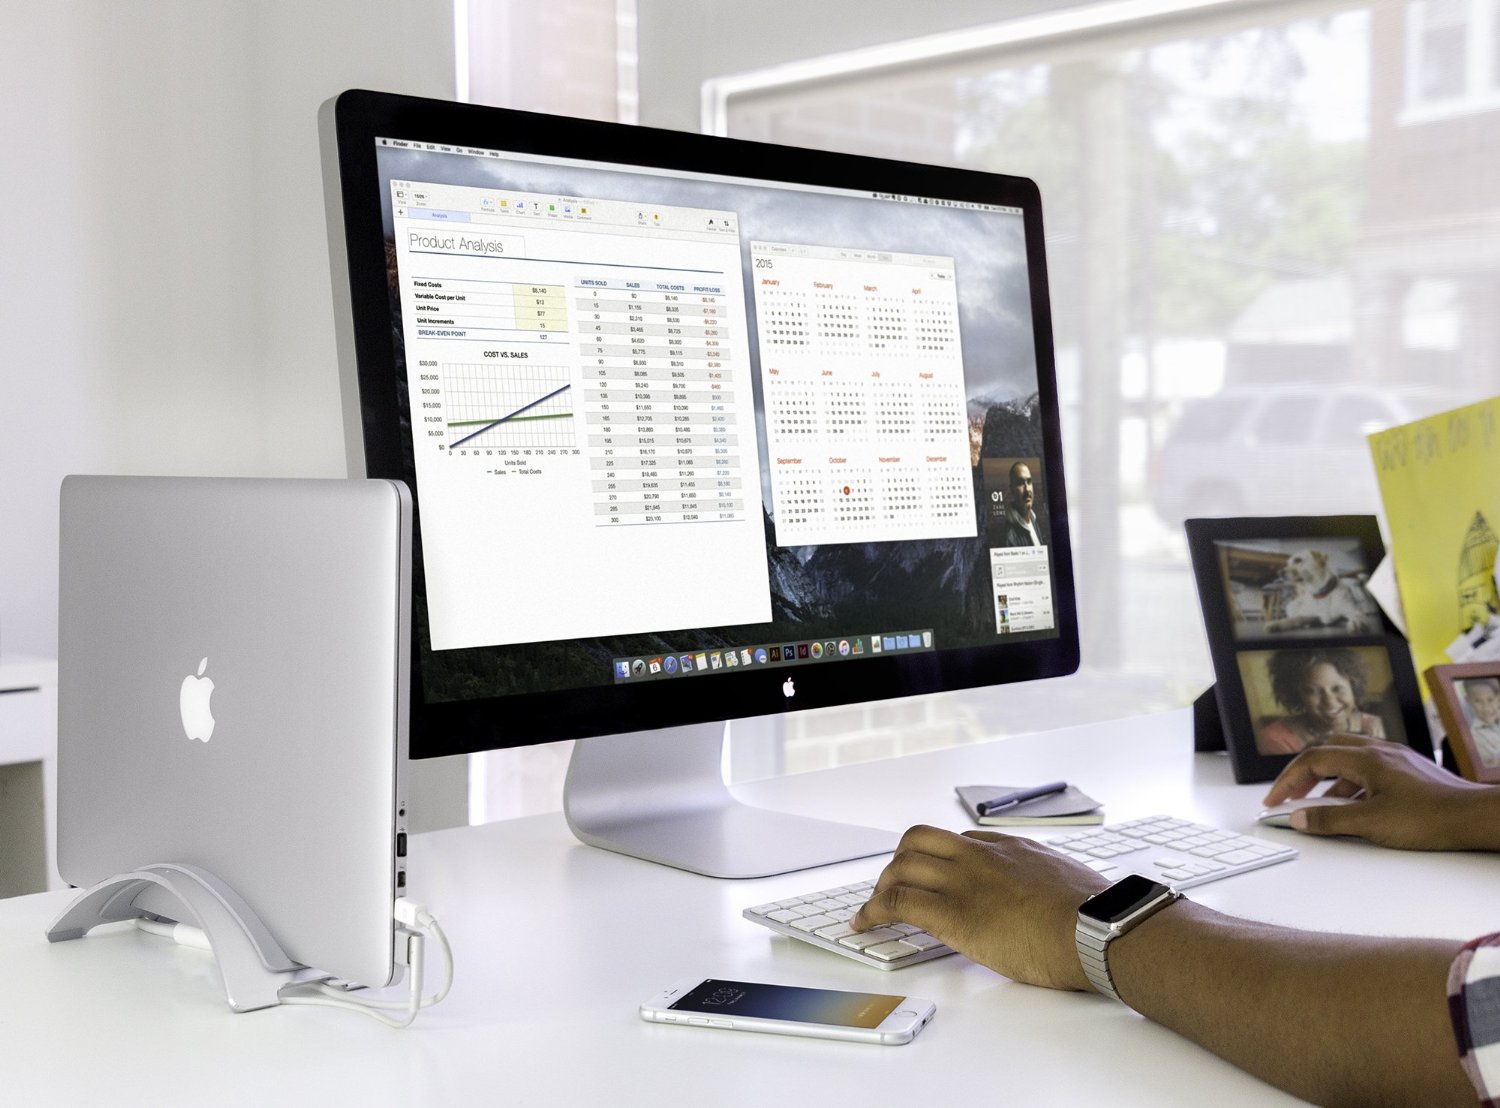 Desktop Mac Powerful Enough For Studio One 3 Pro